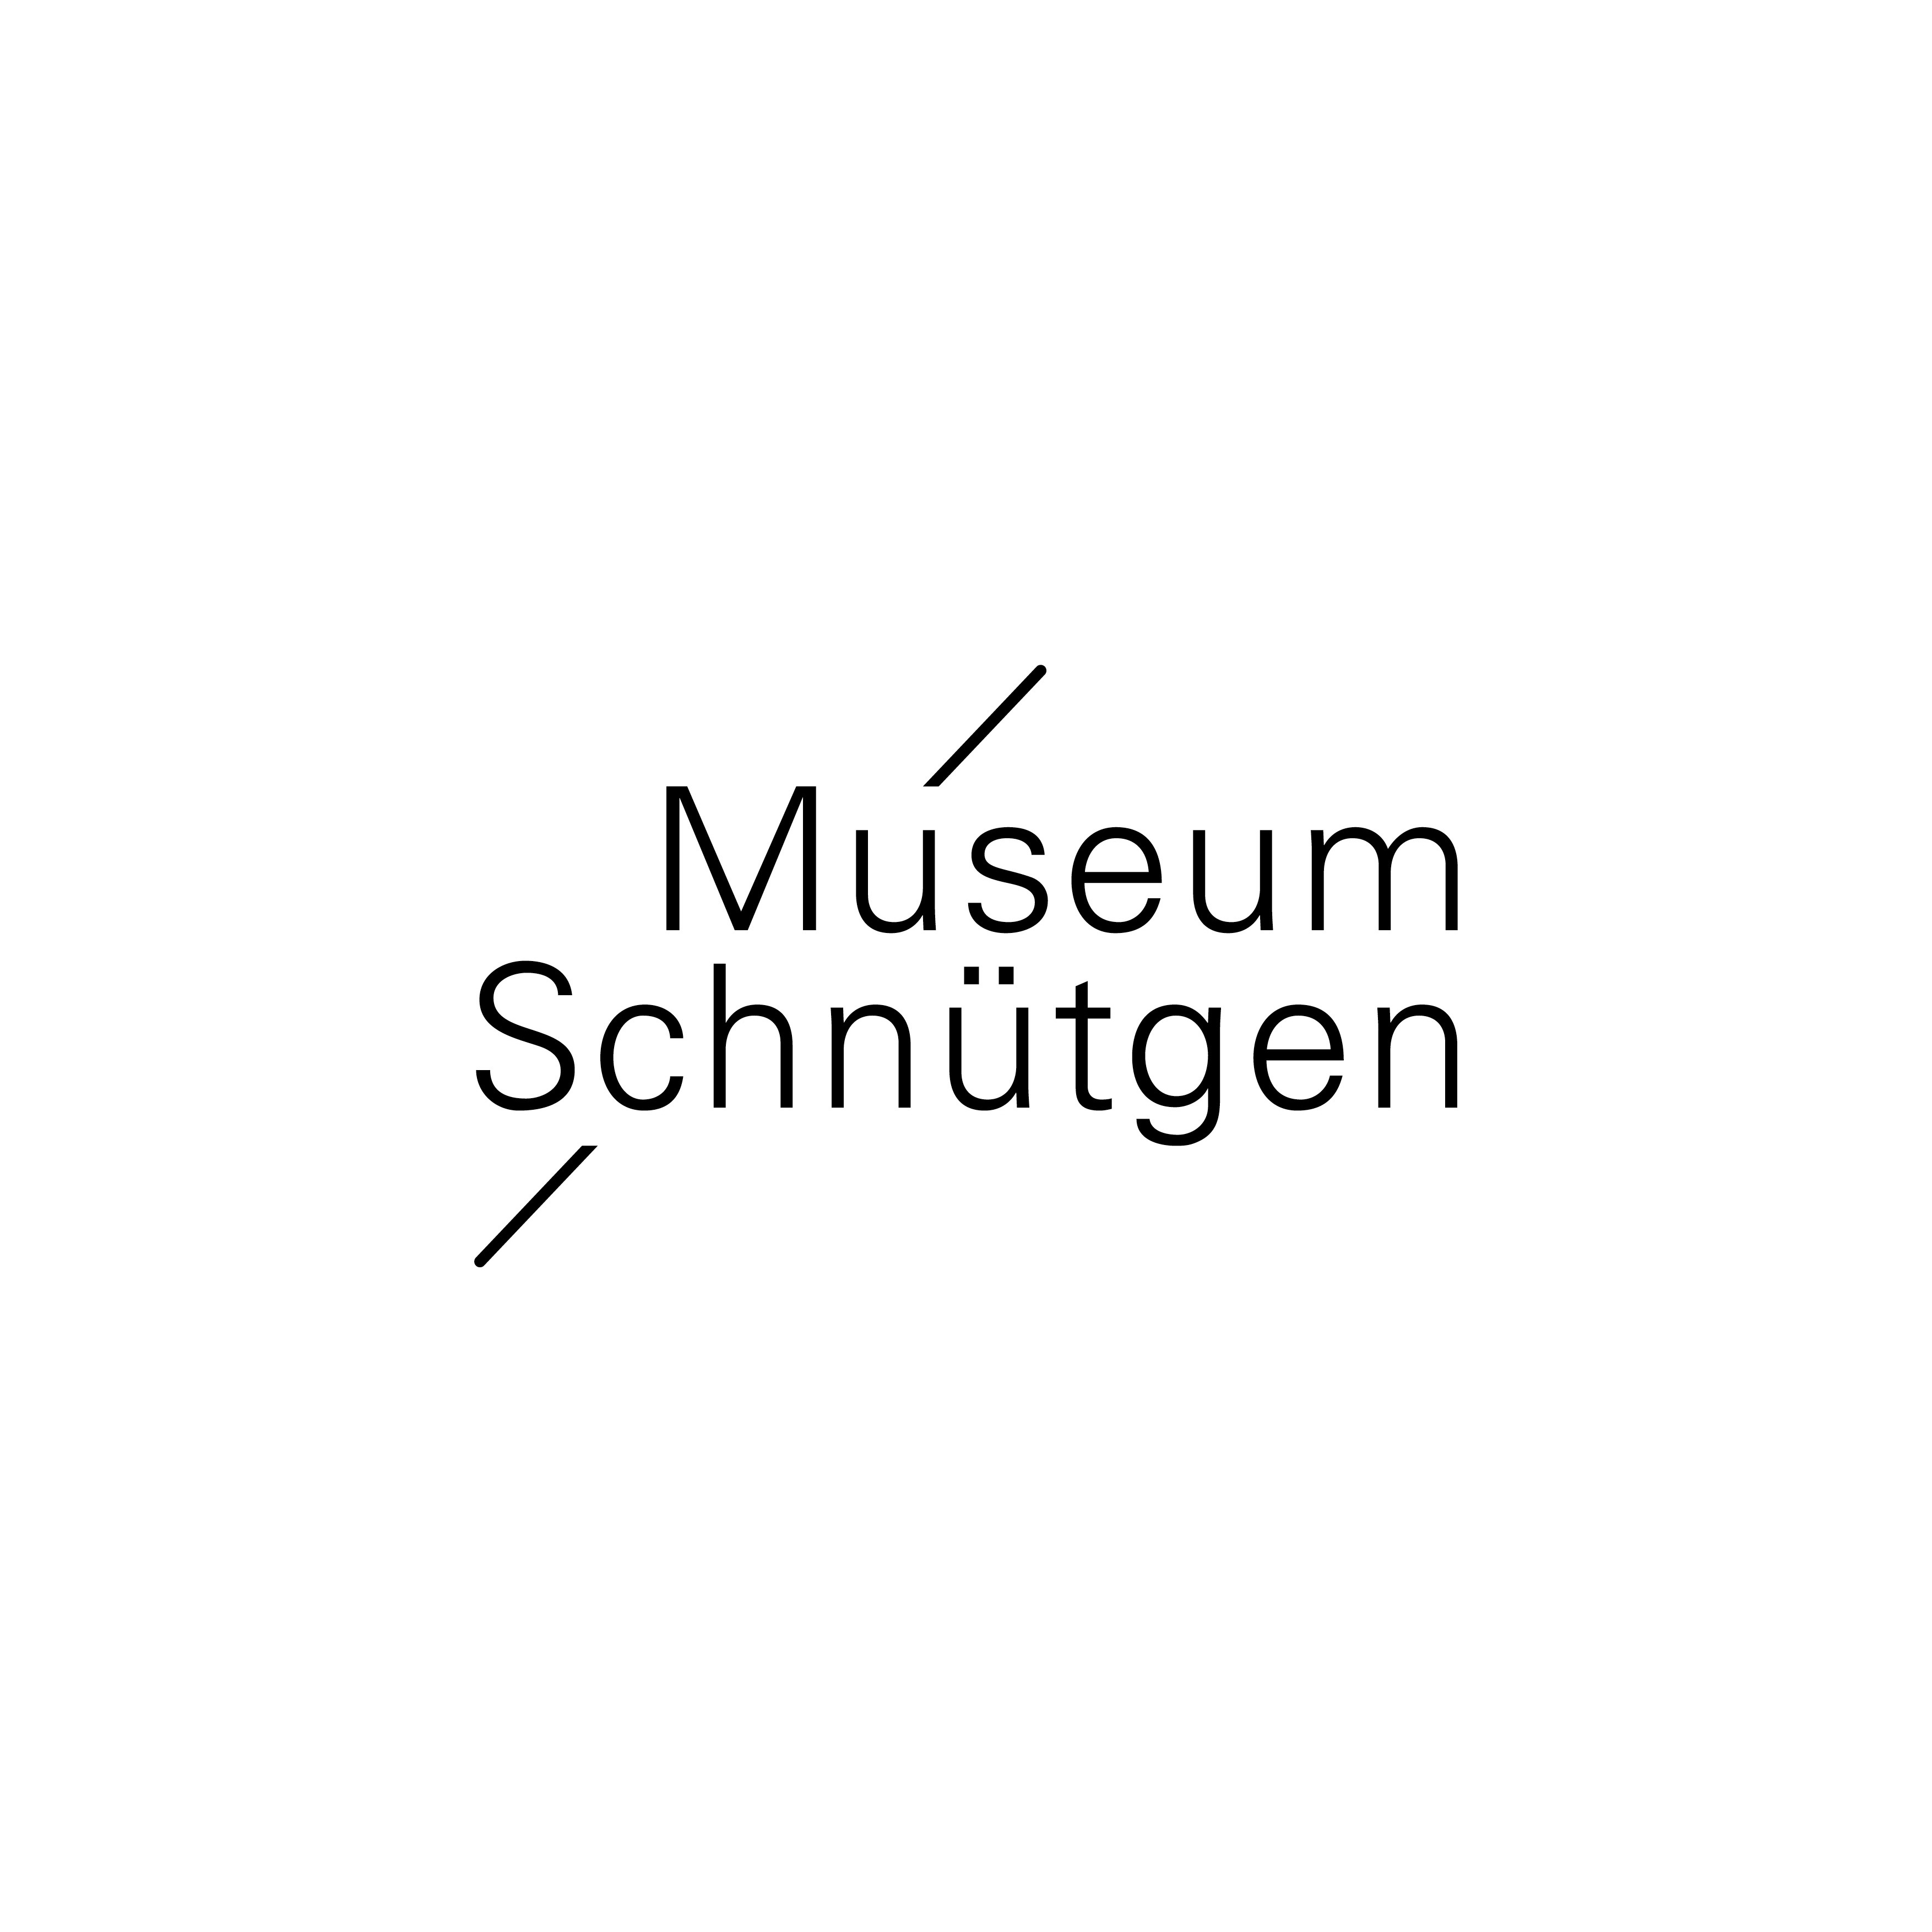 Museum Schnütgen in Köln - Logo